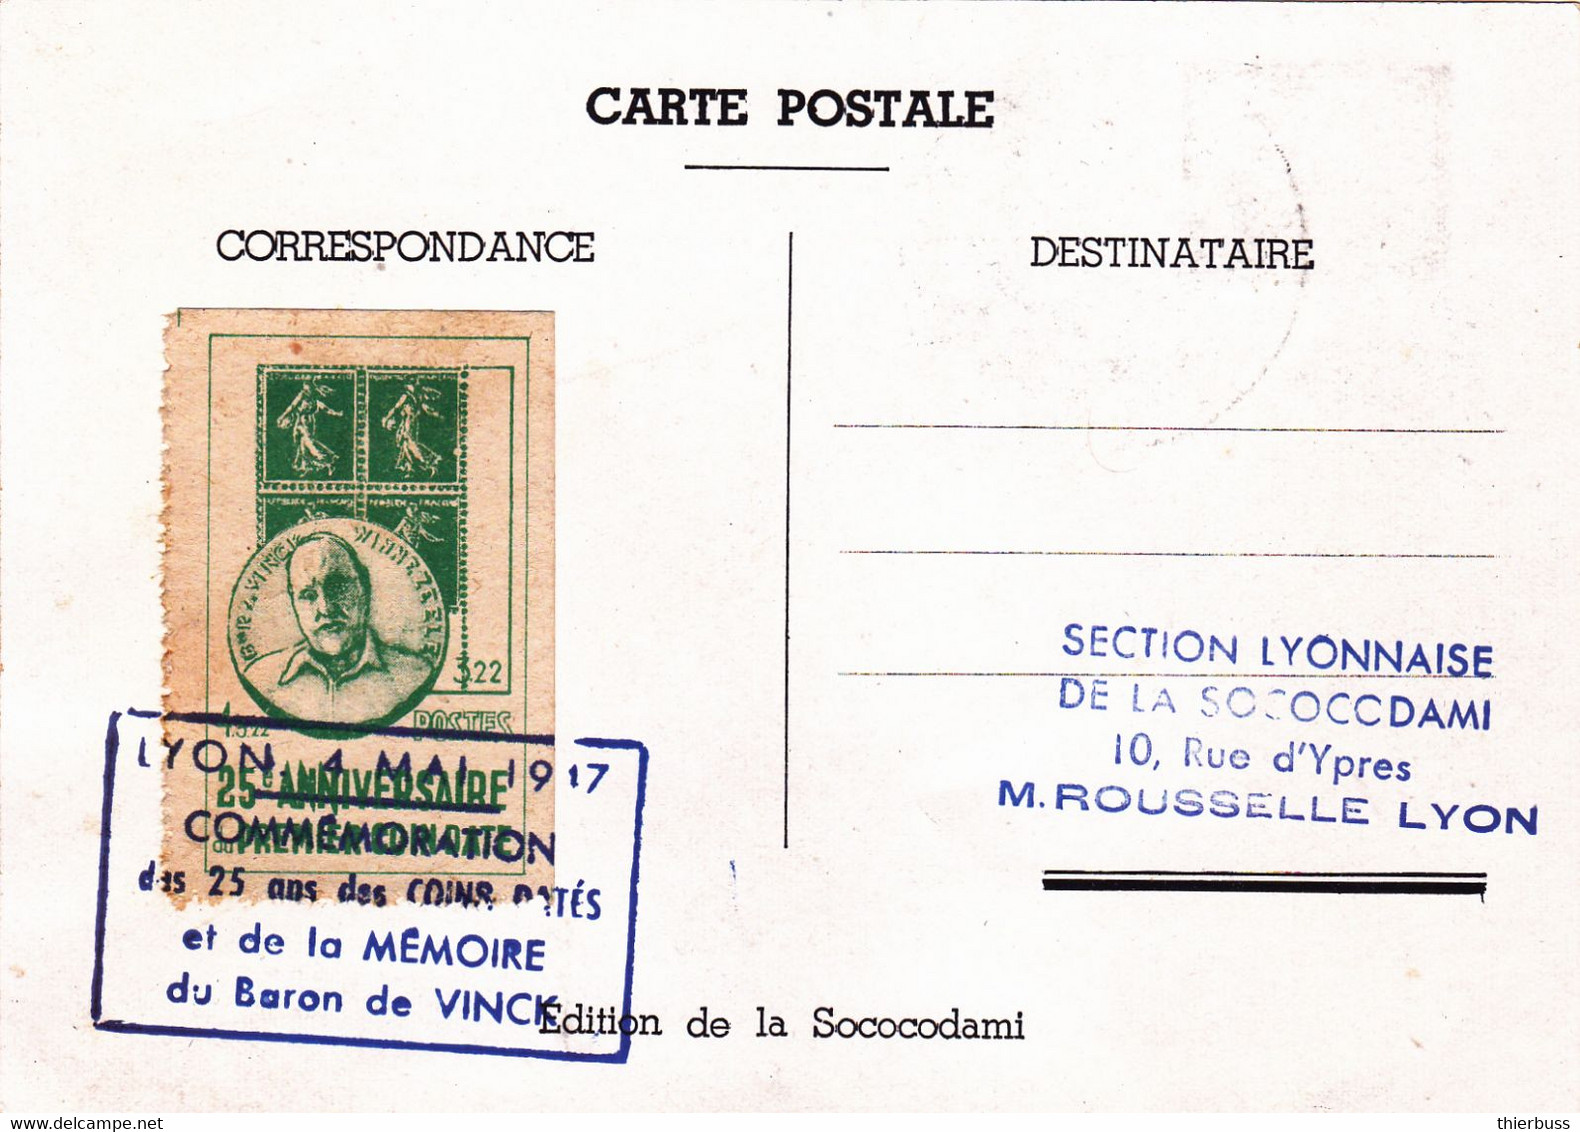 Carte 25 Ans Des Coins Datés Expo Philatelique Lyon 1947 Baron Vinck - 1945-47 Ceres (Mazelin)